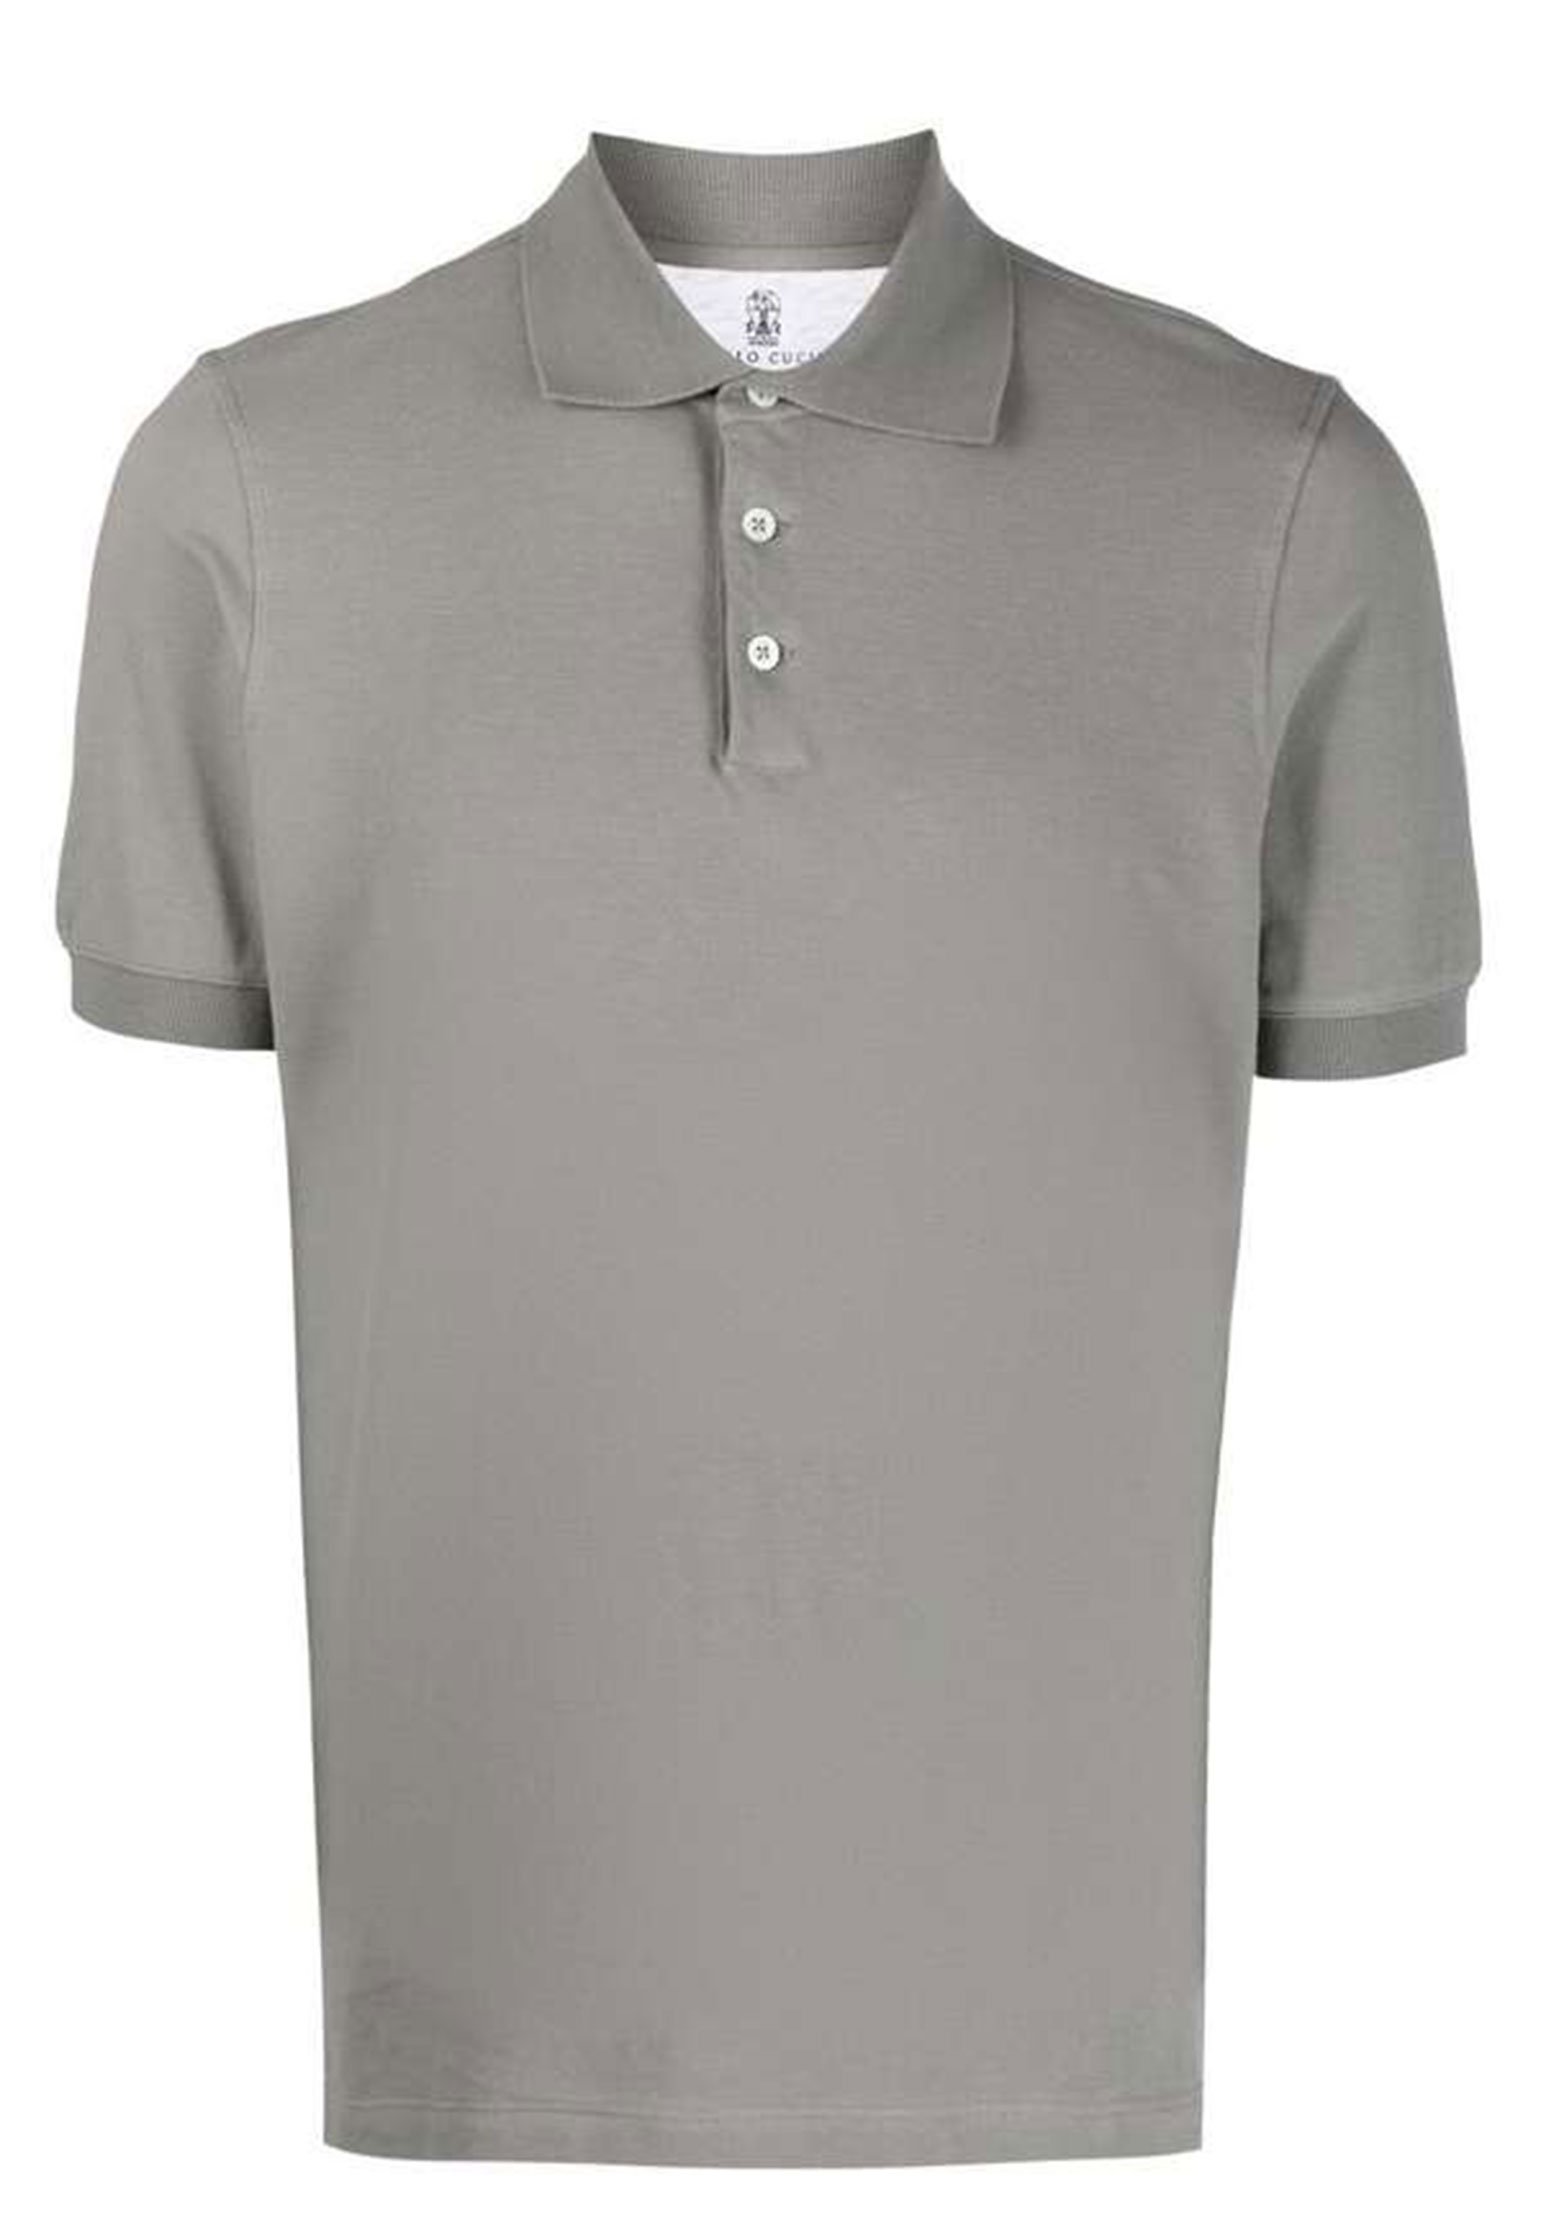 Polo BRUNELLO CUCINELLI Color: grey (Code: 258) in online store Allure